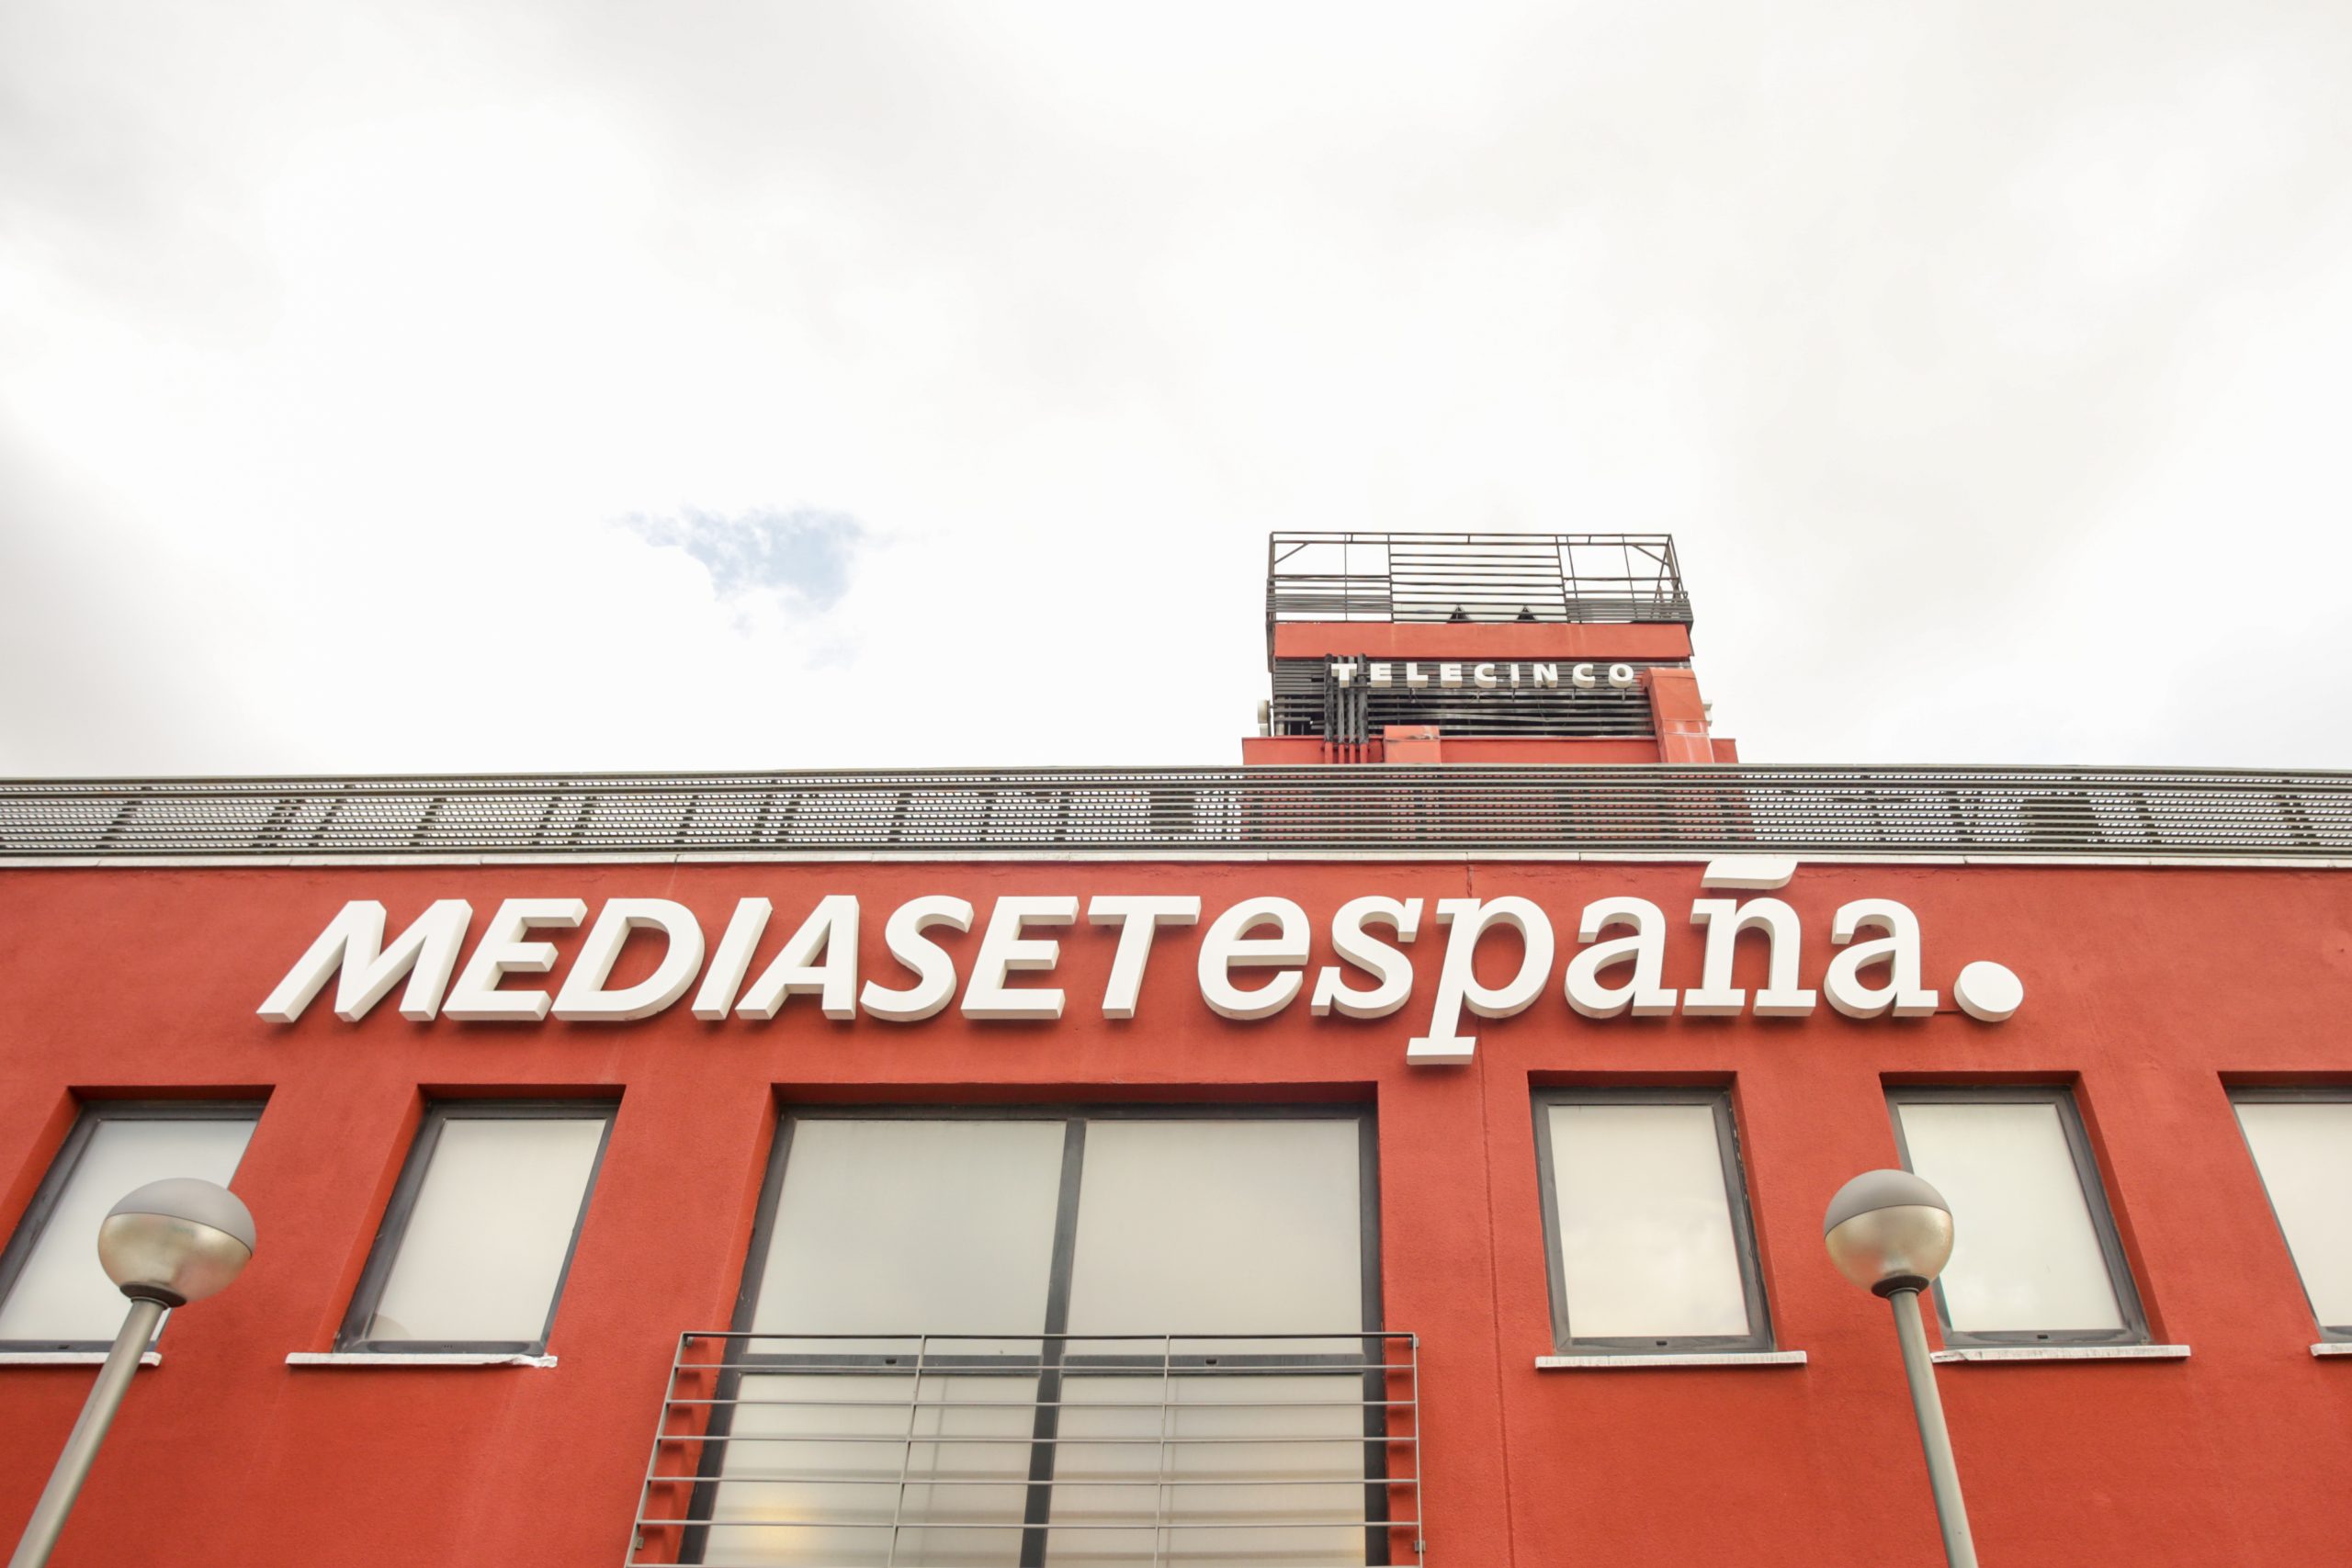 El Supremo confirma una multa a Mediaset de 196.000 euros por publicidad encubierta